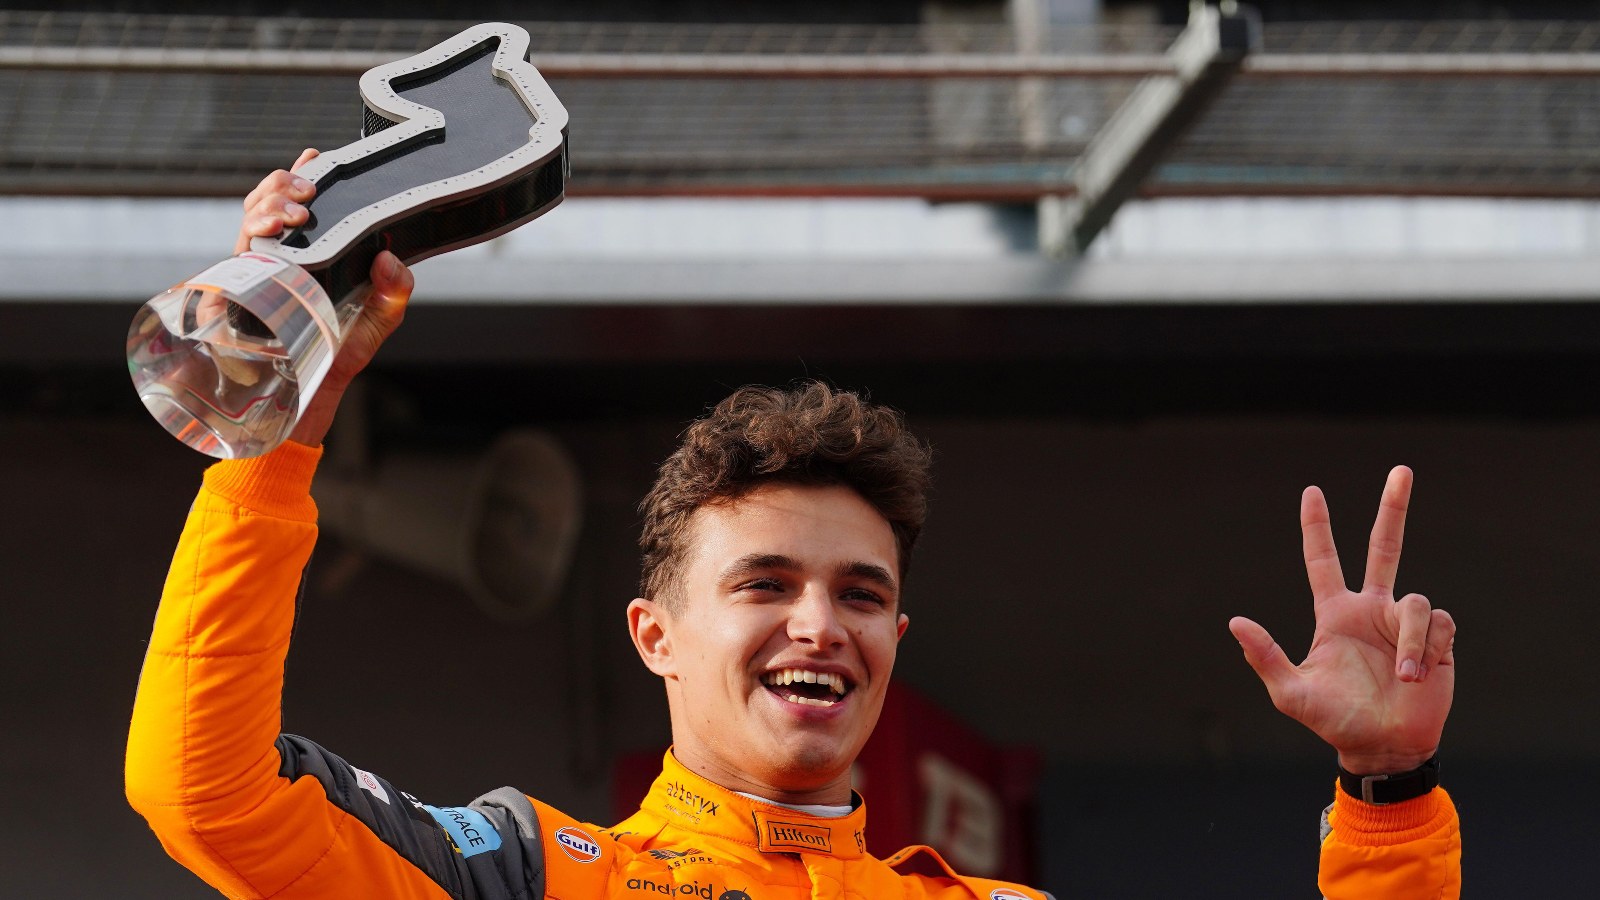 Lando Norris celebrates a podium at the 2022 Emilia Romagna Grand Prix. Imola, April 2022.